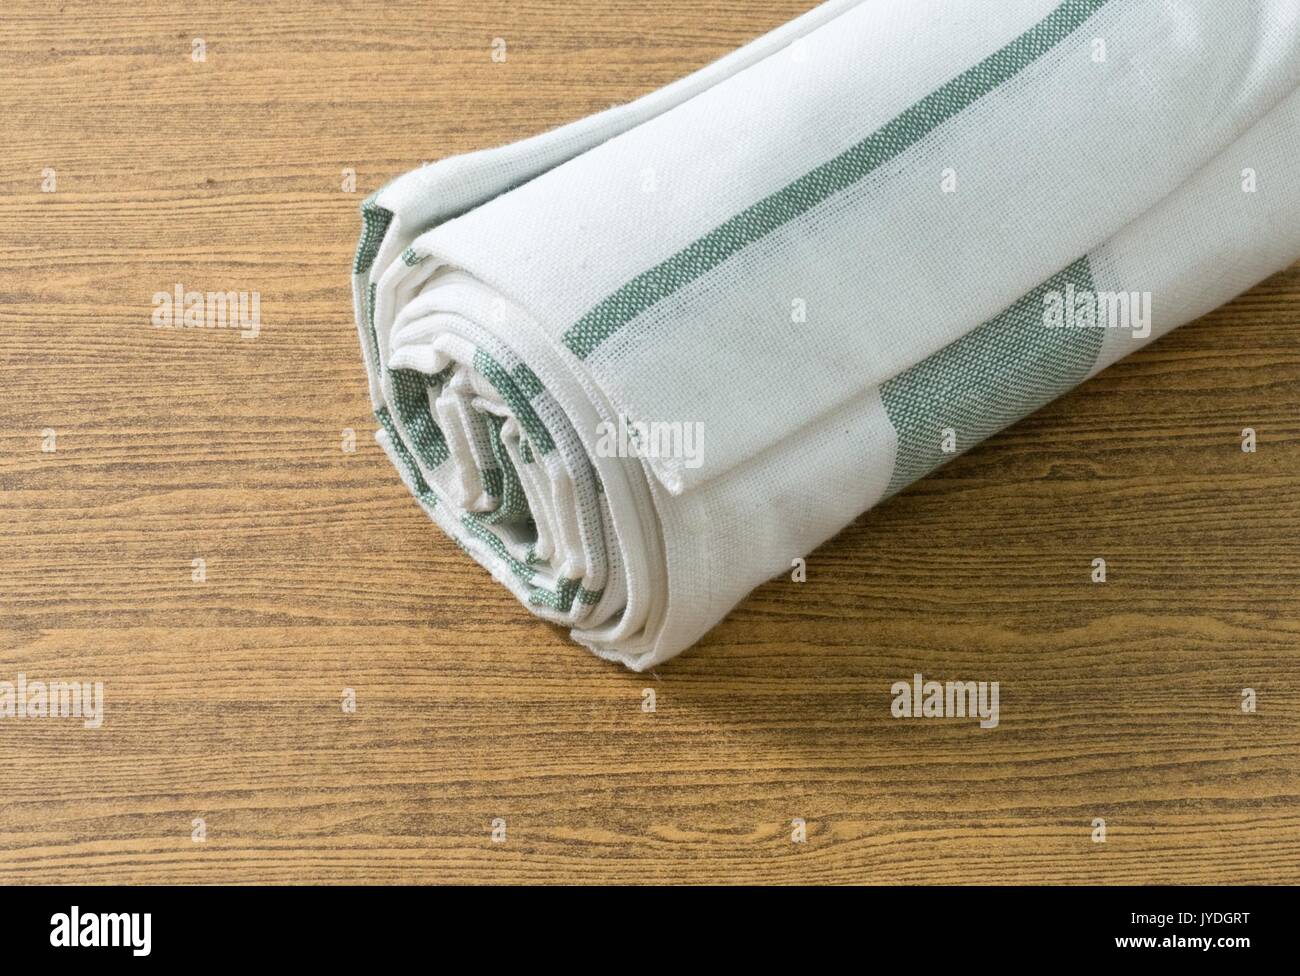 Küchengeräte, Weiß und Grün Servietten, Serviette oder Küchentuch auf hölzernen Tisch mit Platz für Text kopieren eingerichtet. Stockfoto